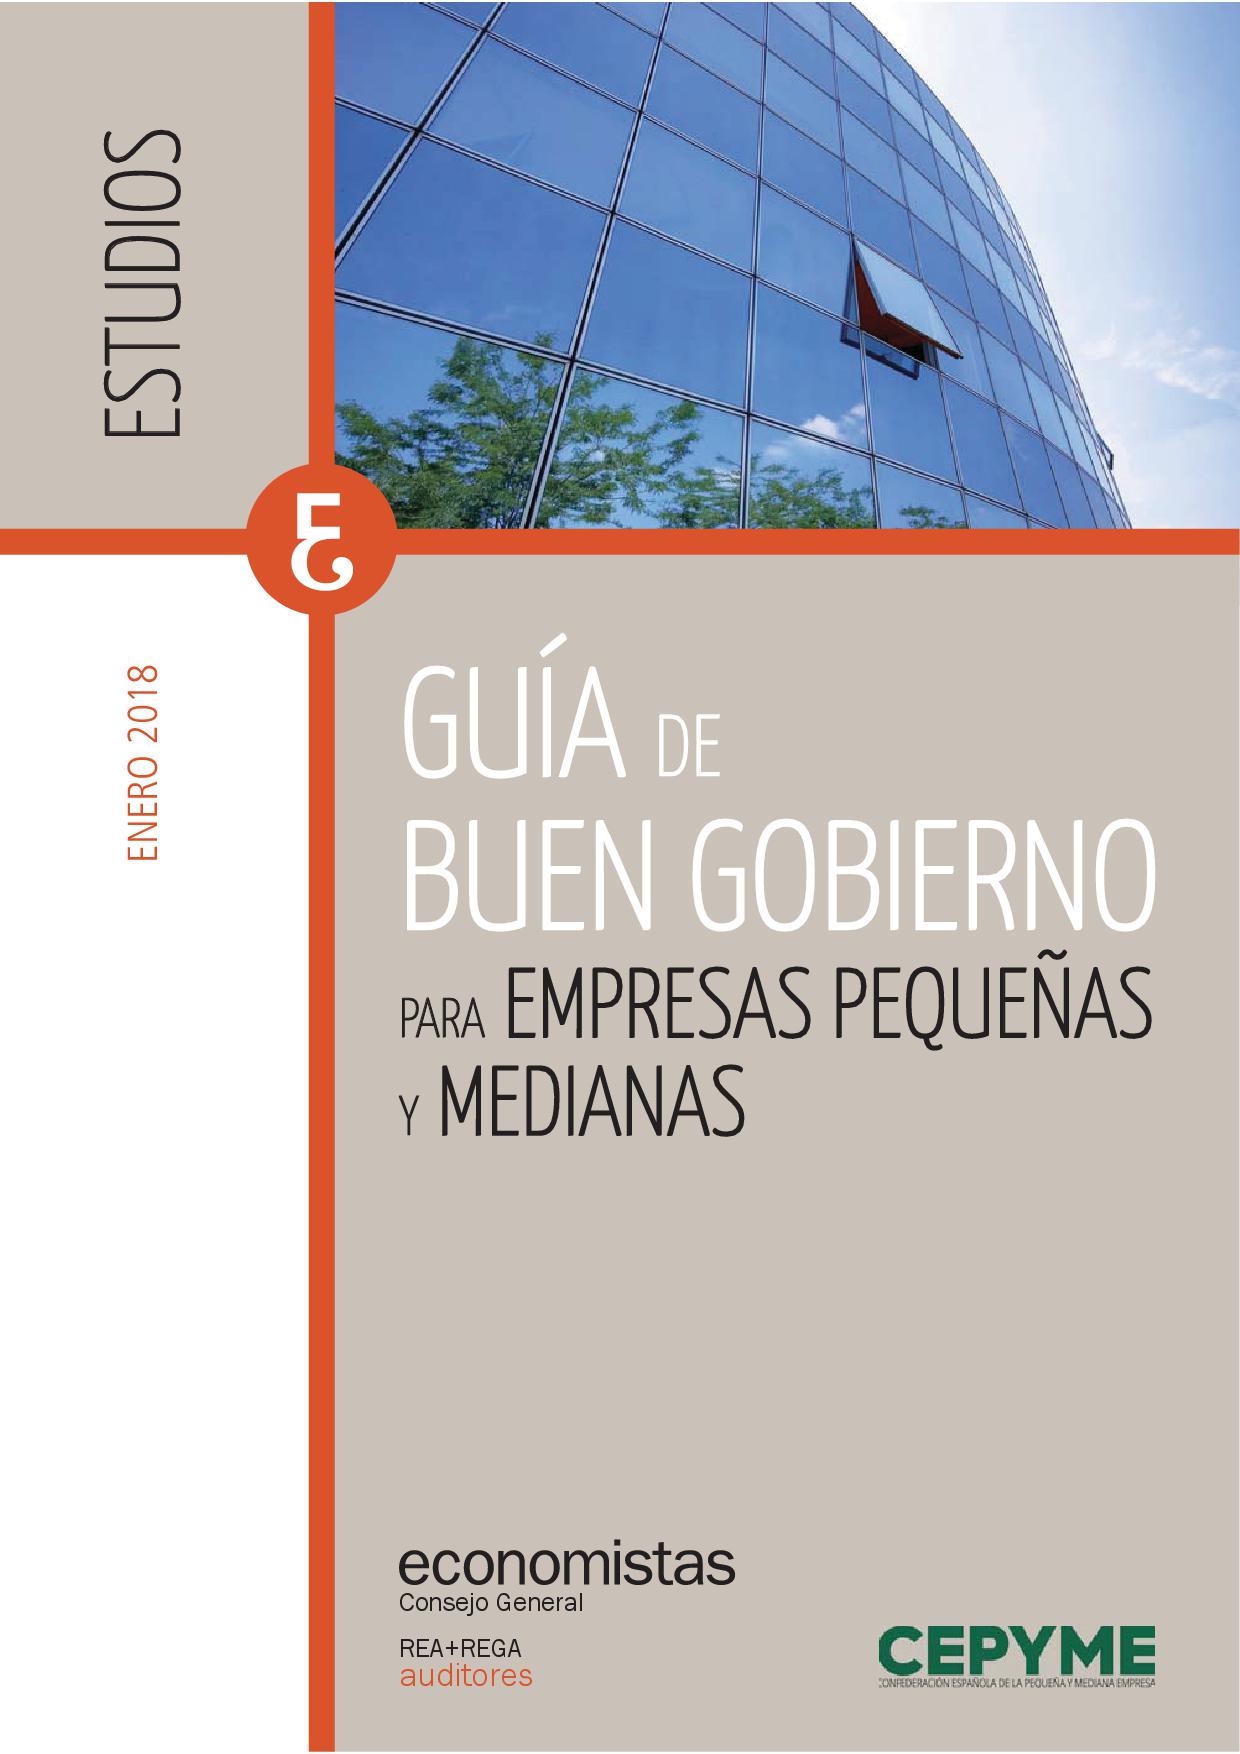 Guía de Buen Gobierno para PYMES. Editada por REA+REGA Auditores del Consejo General de Economistas y CEPYME